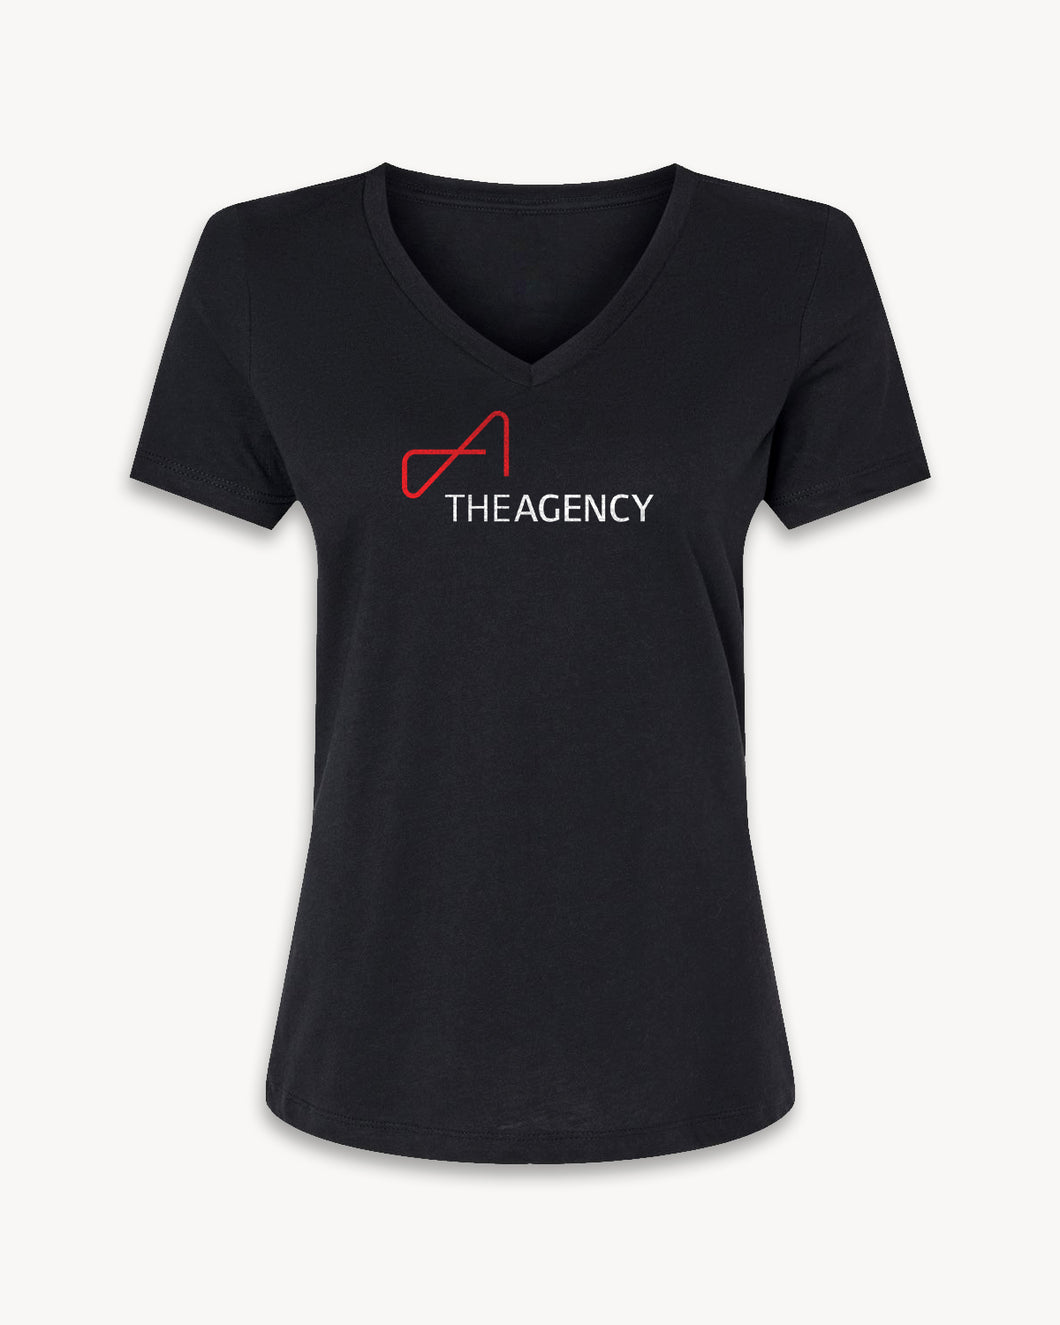 The Agency T-Shirt (Women's)